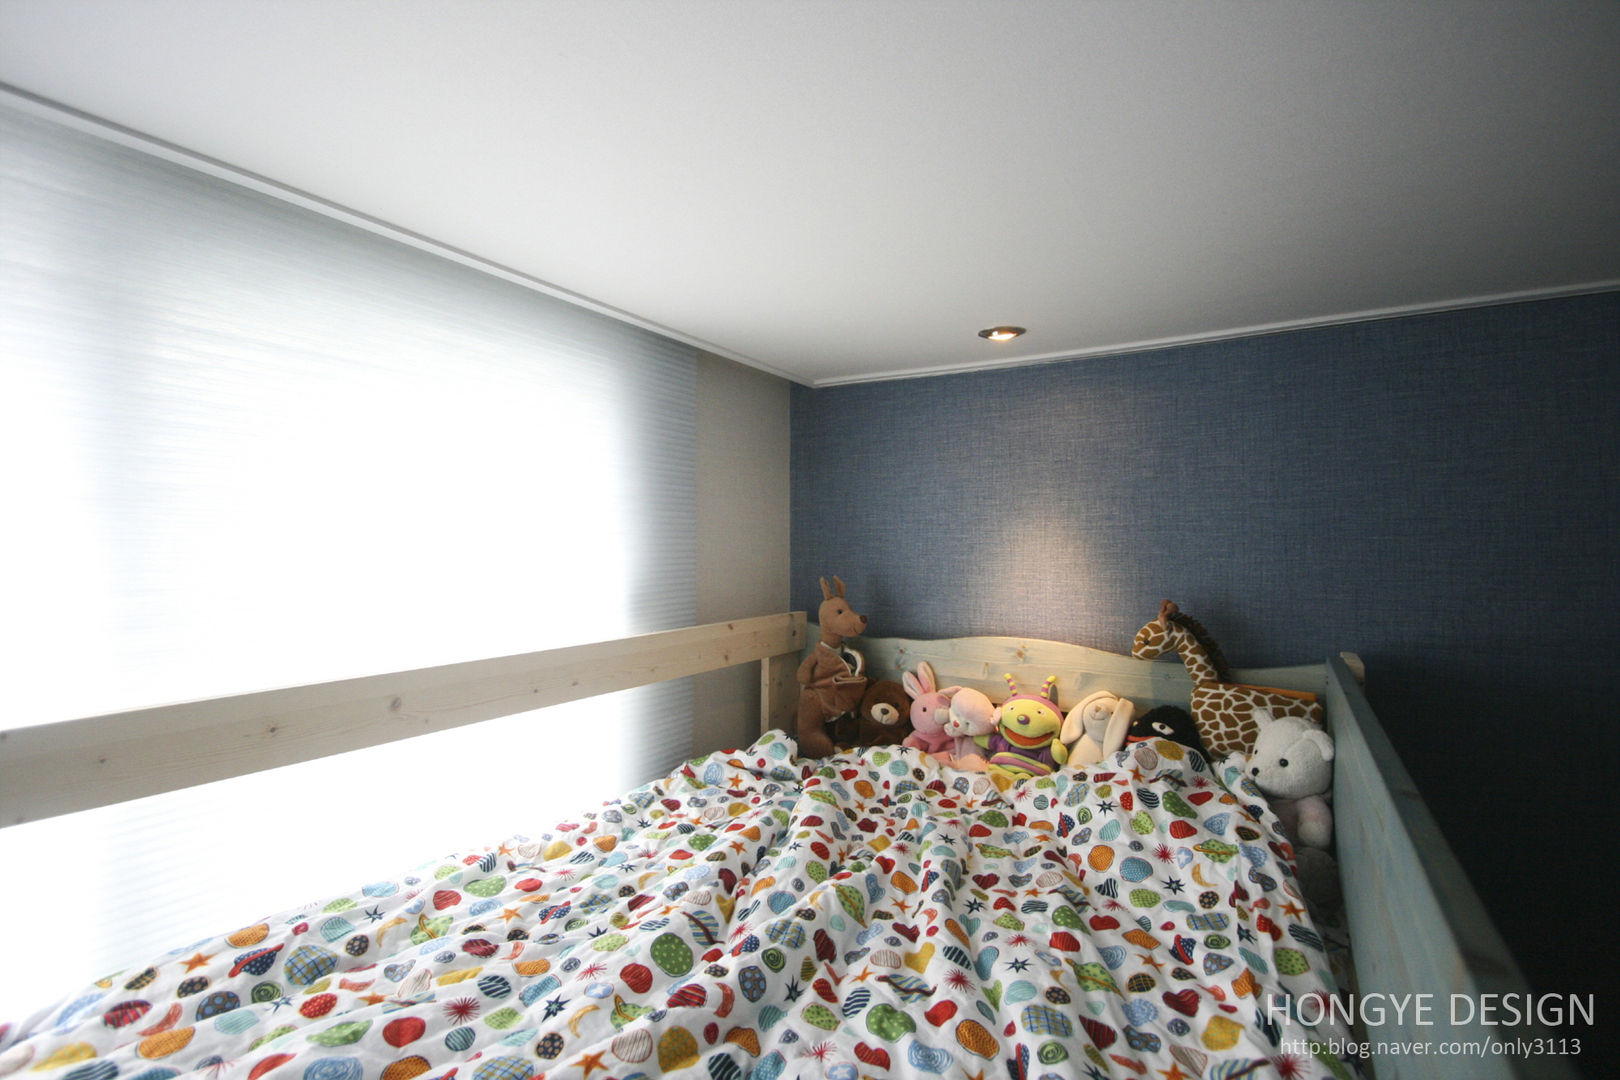 아이셋과 부모님이 함께 사는 집_48py, 홍예디자인 홍예디자인 غرفة الاطفال